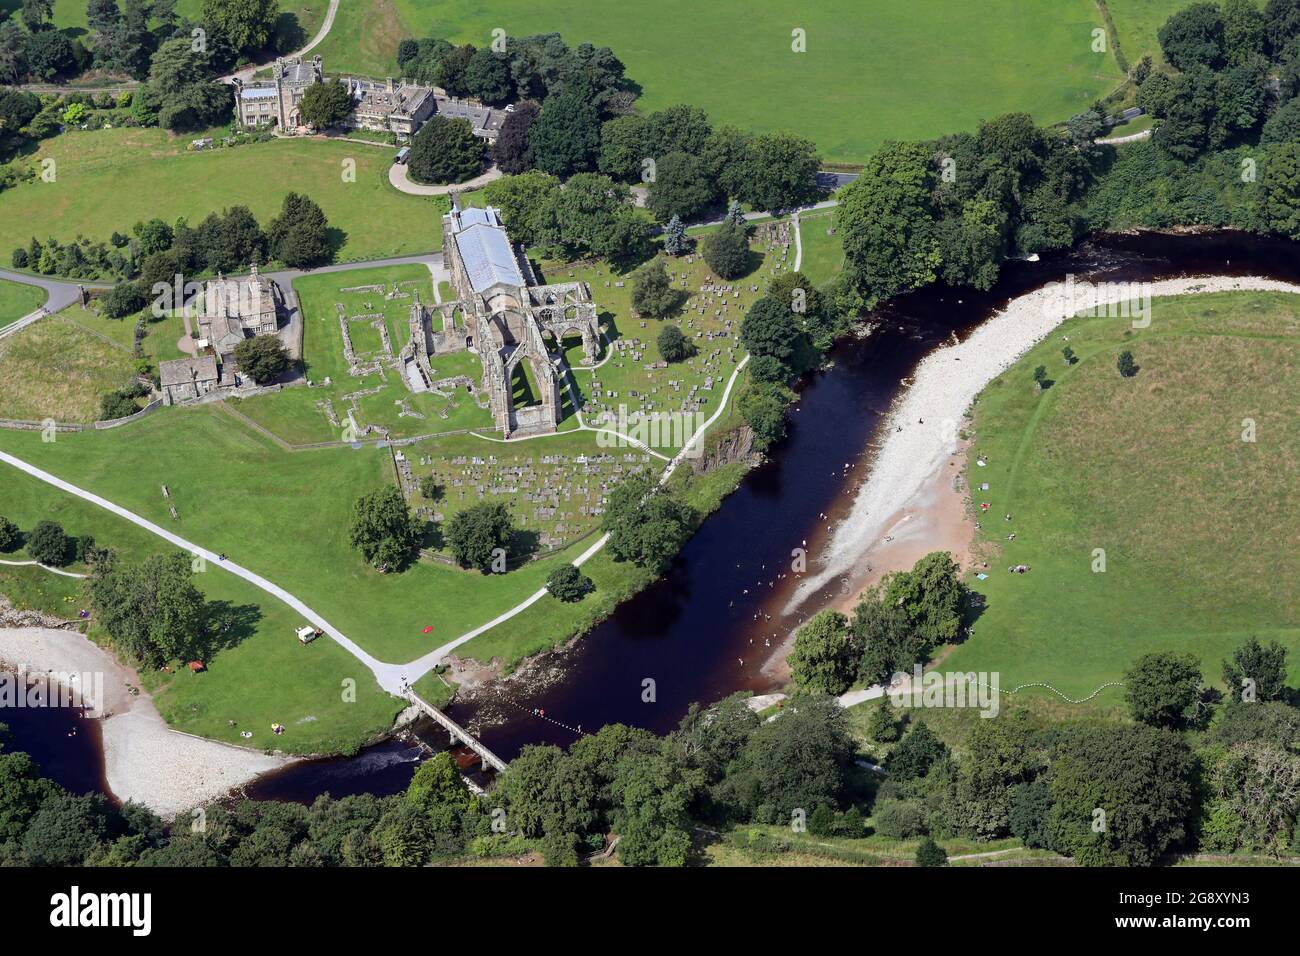 Vista aerea dell'abbazia di Bolton con i visitatori che prendono il sole e nuotano nel fiume Wharfe Foto Stock